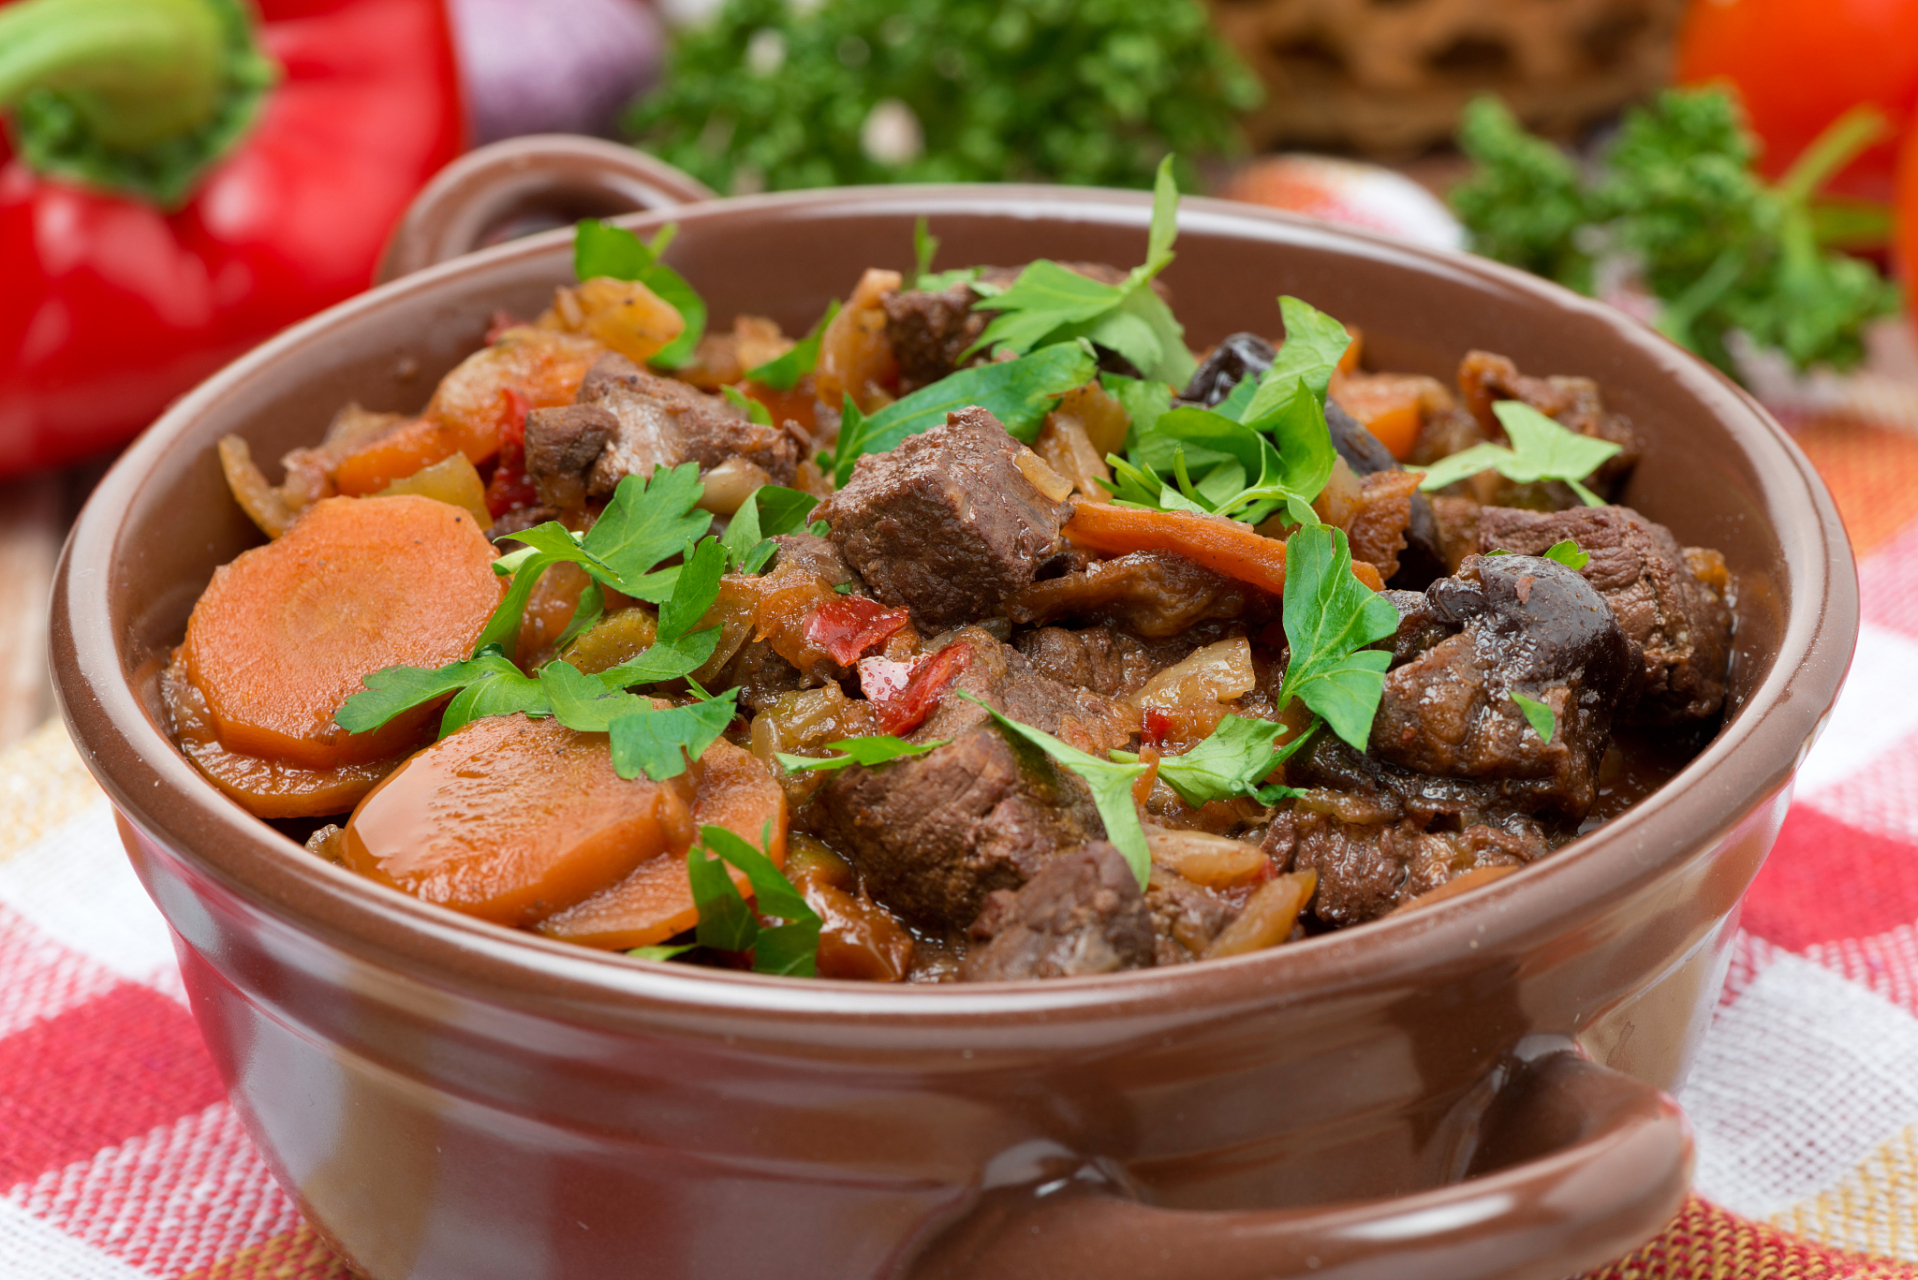 羊肉煲:肉质鲜嫩,汤汁浓郁,让你爱上这道传统美食,羊肉煲是一道充满